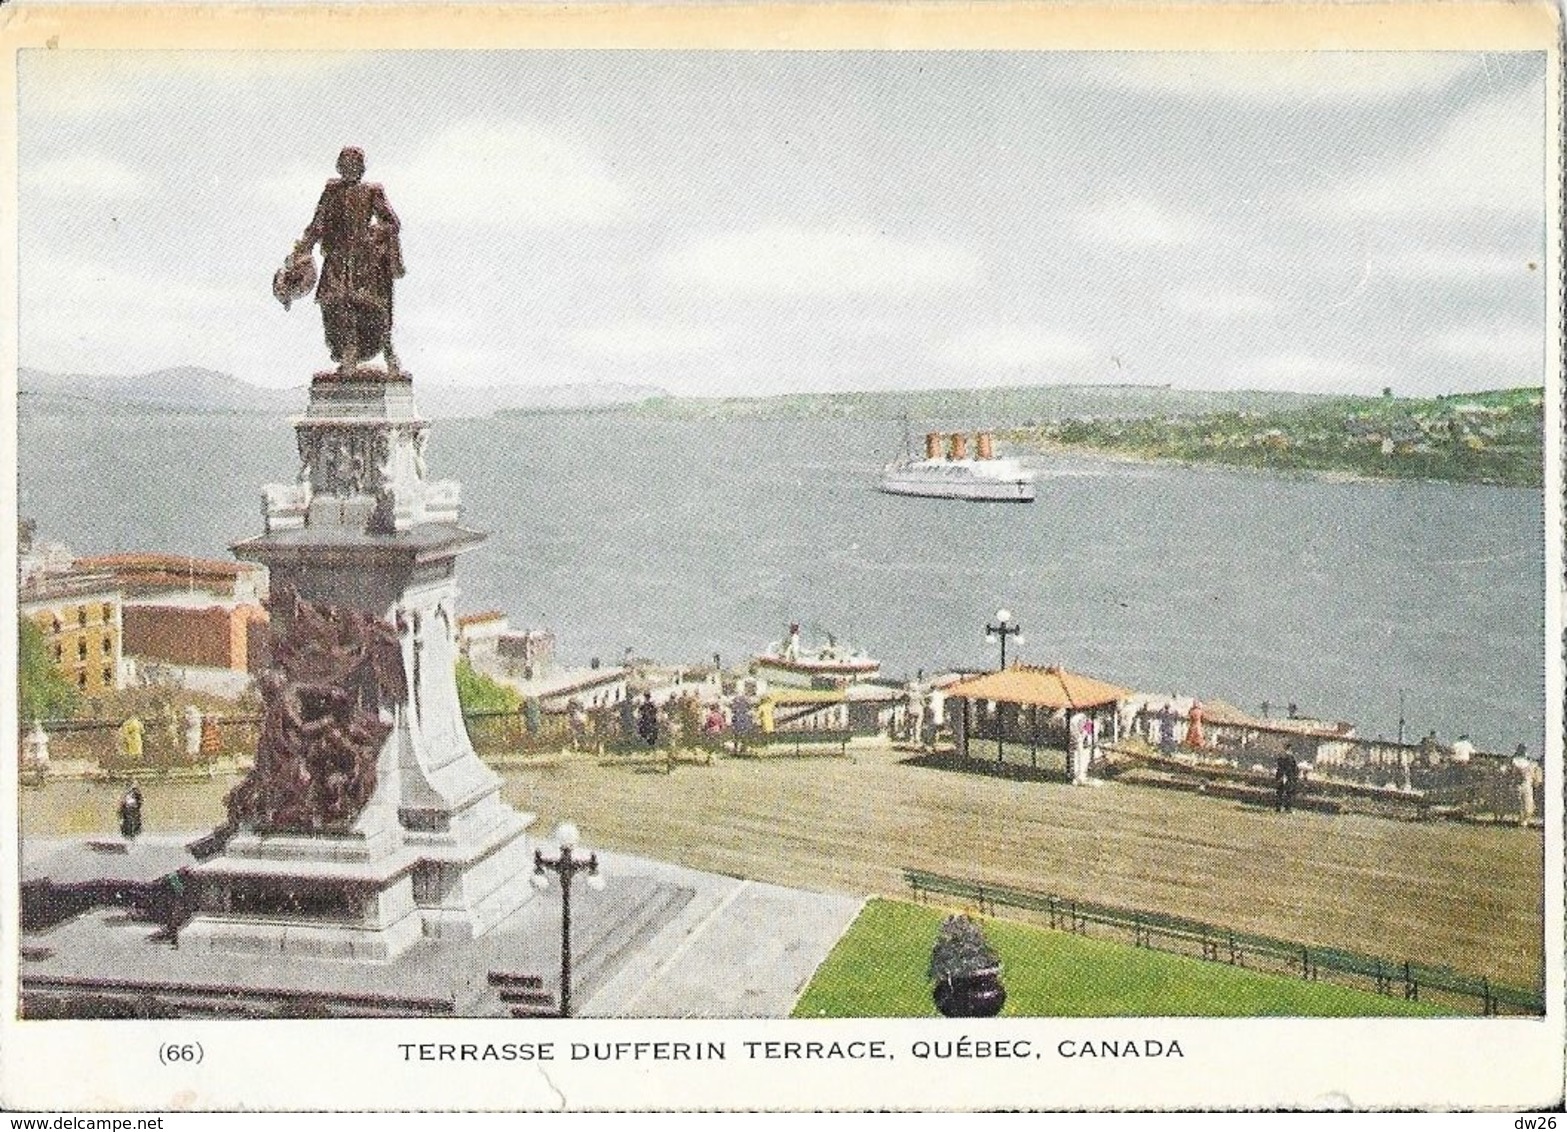 Terrasse Dufferin Terrace, Quebec, Canada - Monument Et Statue De Champlain, Le Saint Laurent - Québec - Château Frontenac